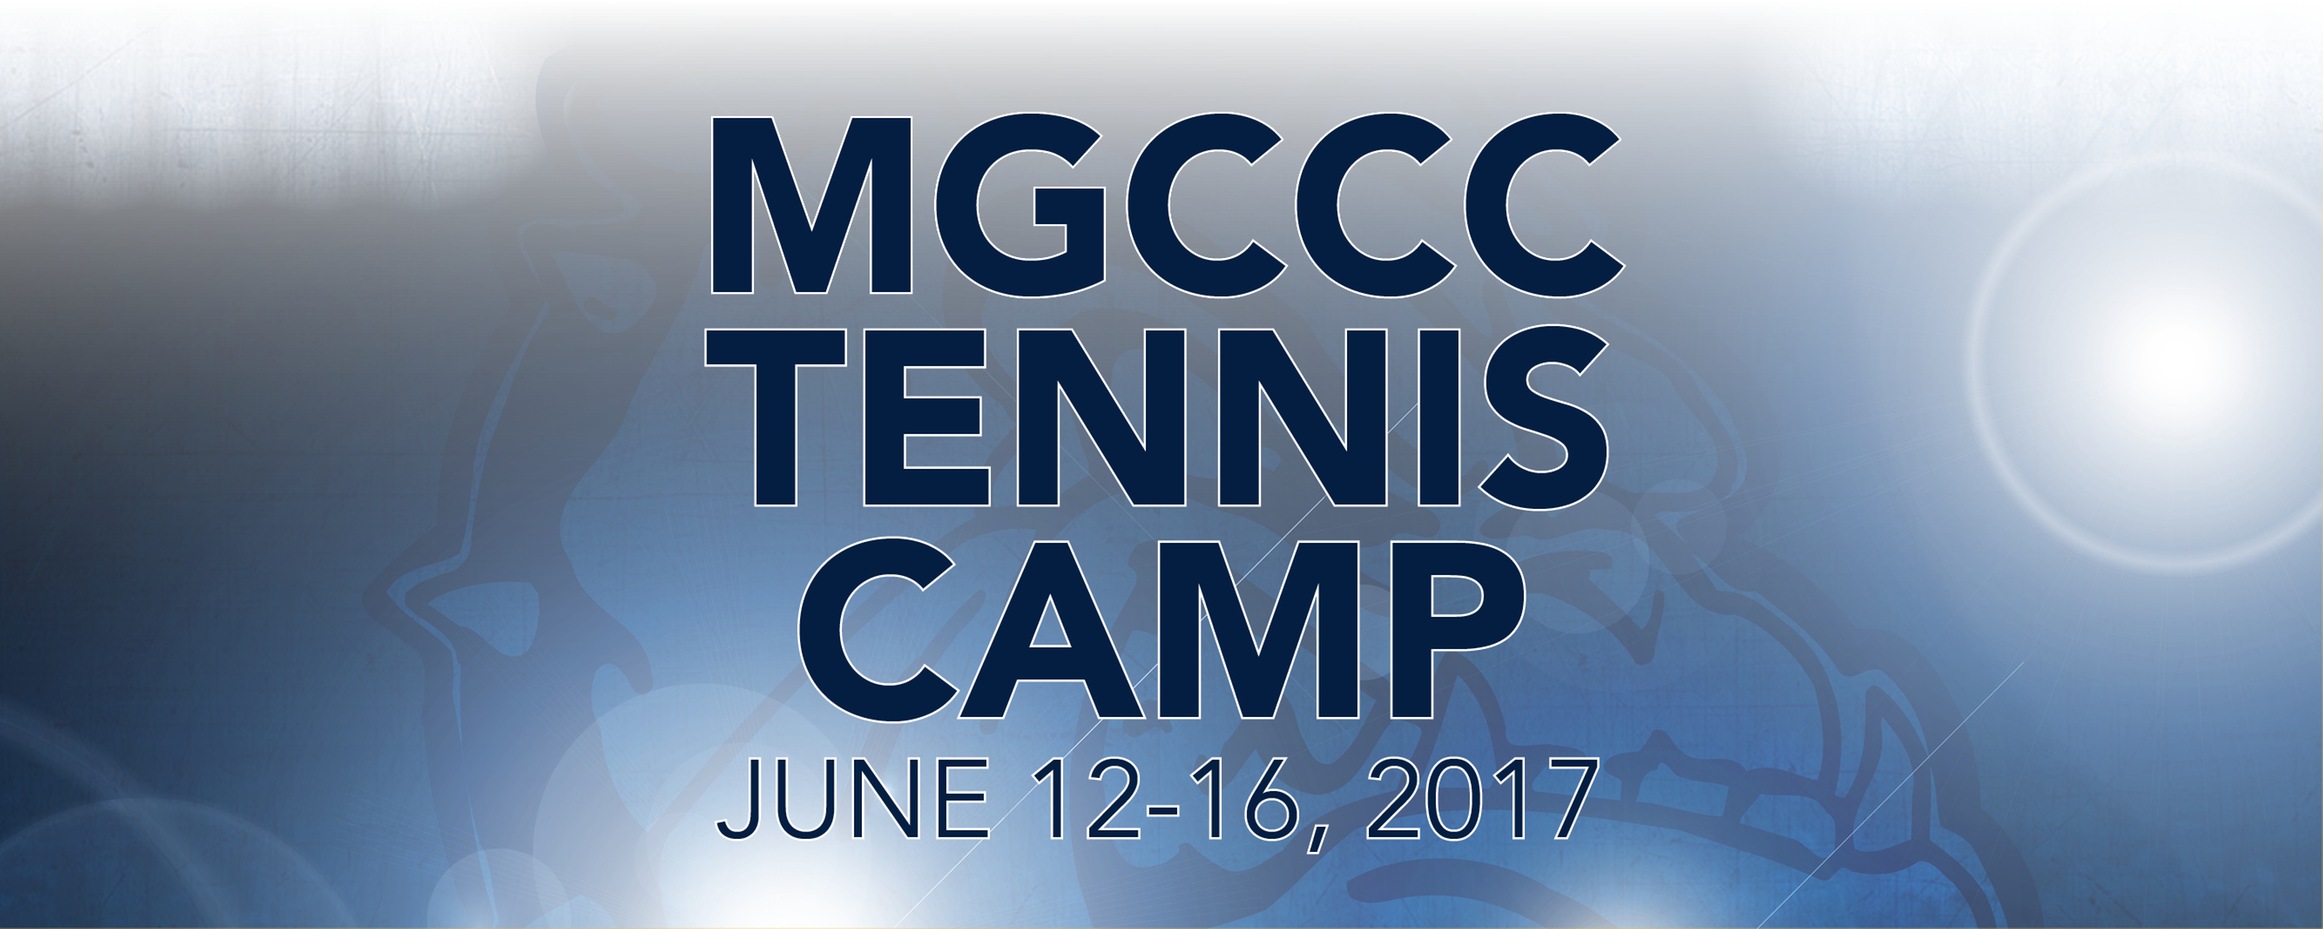 MGCCC announces summer tennis camp